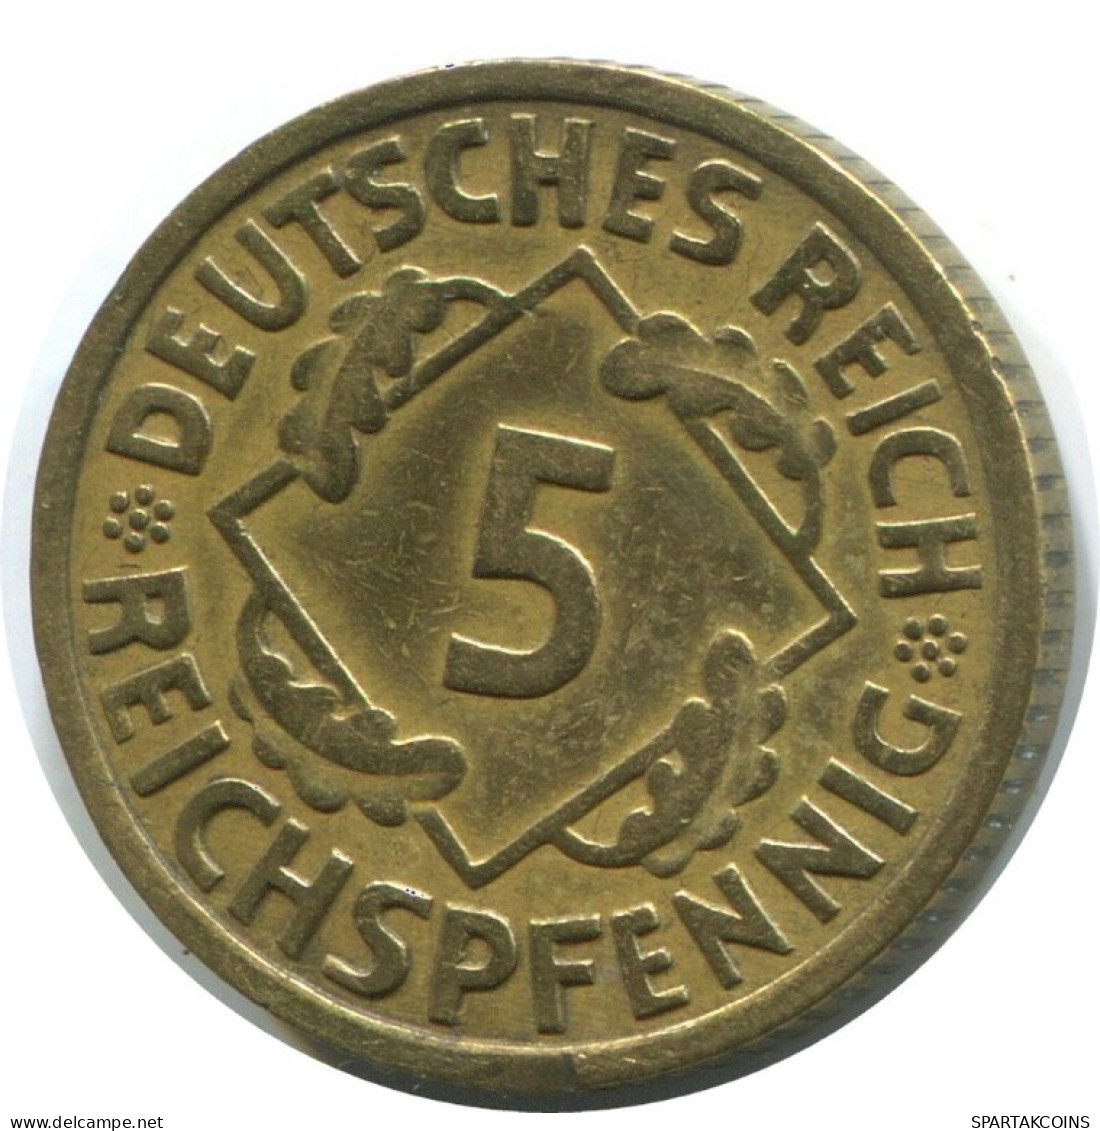 5 REICHSPFENNIG 1935 A ALEMANIA Moneda GERMANY #AD816.9.E.A - 5 Reichspfennig